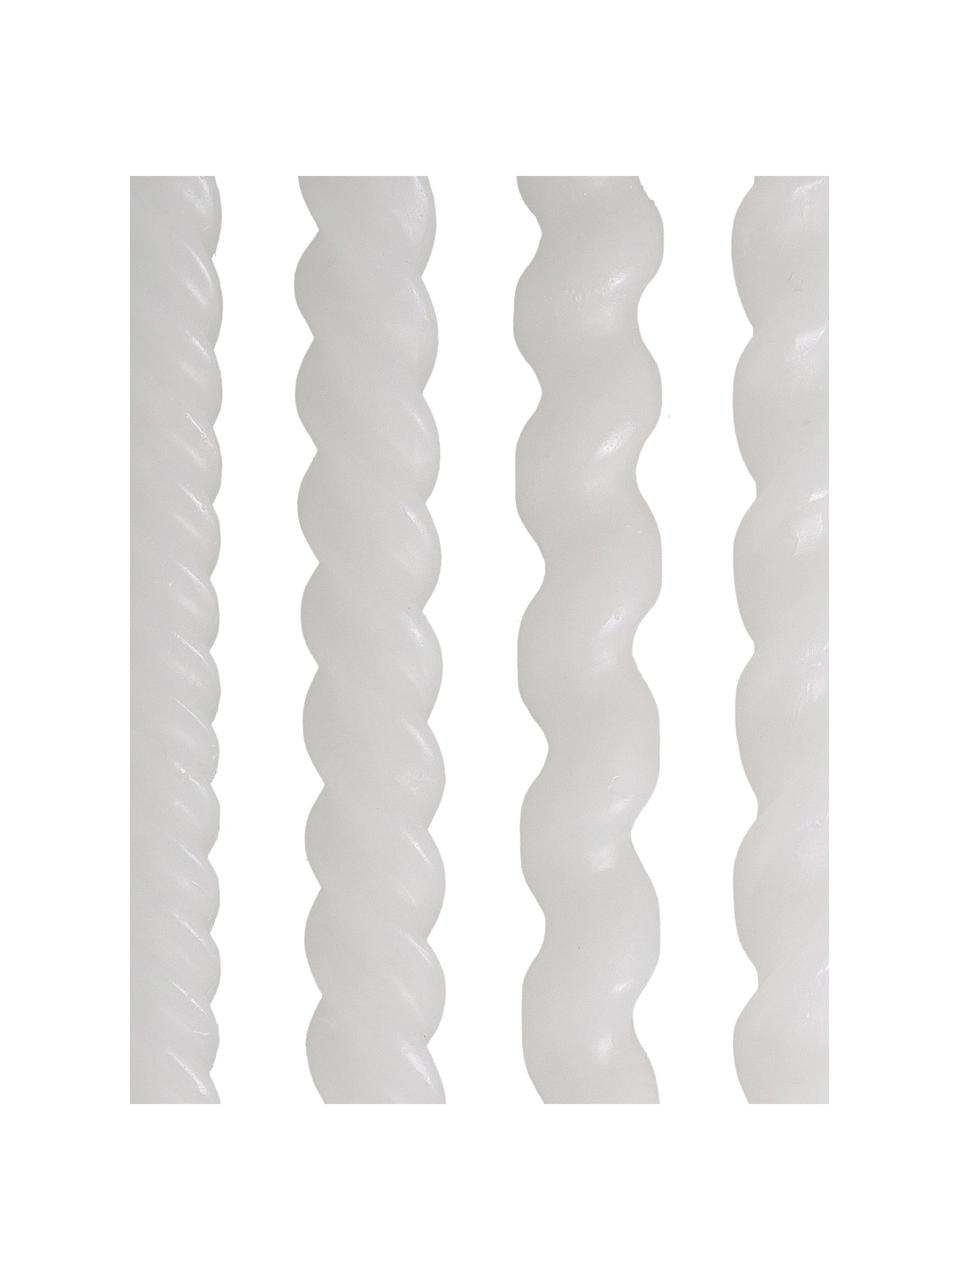 Stabkerzen Spiral, 4 Stück, Wachs, Weiß, Ø 2,5 x H 31 cm